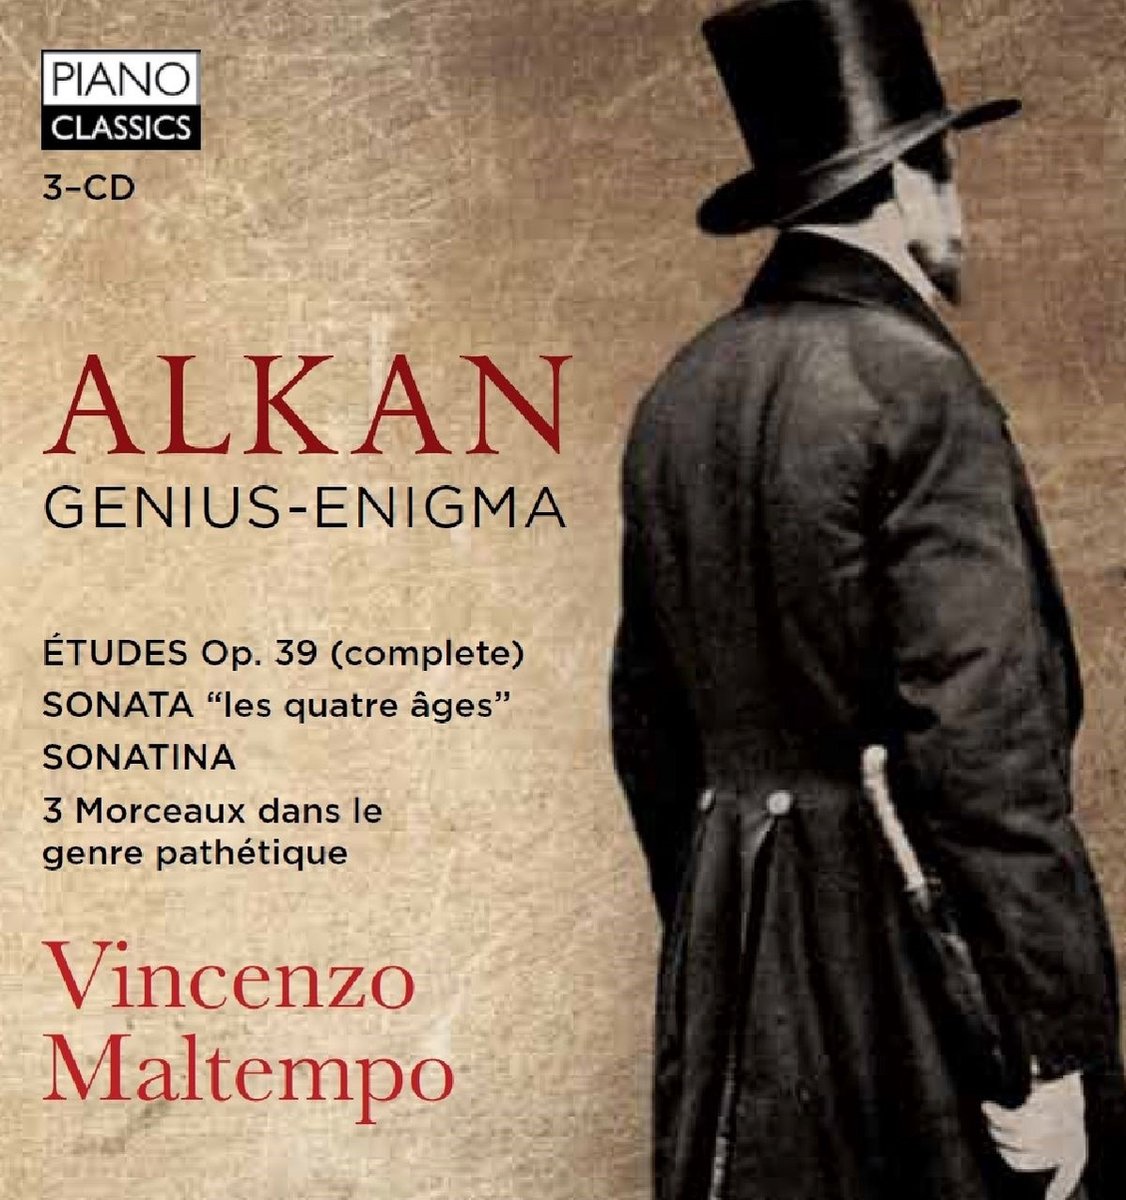 Vincenzo Maltempo - Alkan: Genius-Enigma (CD)